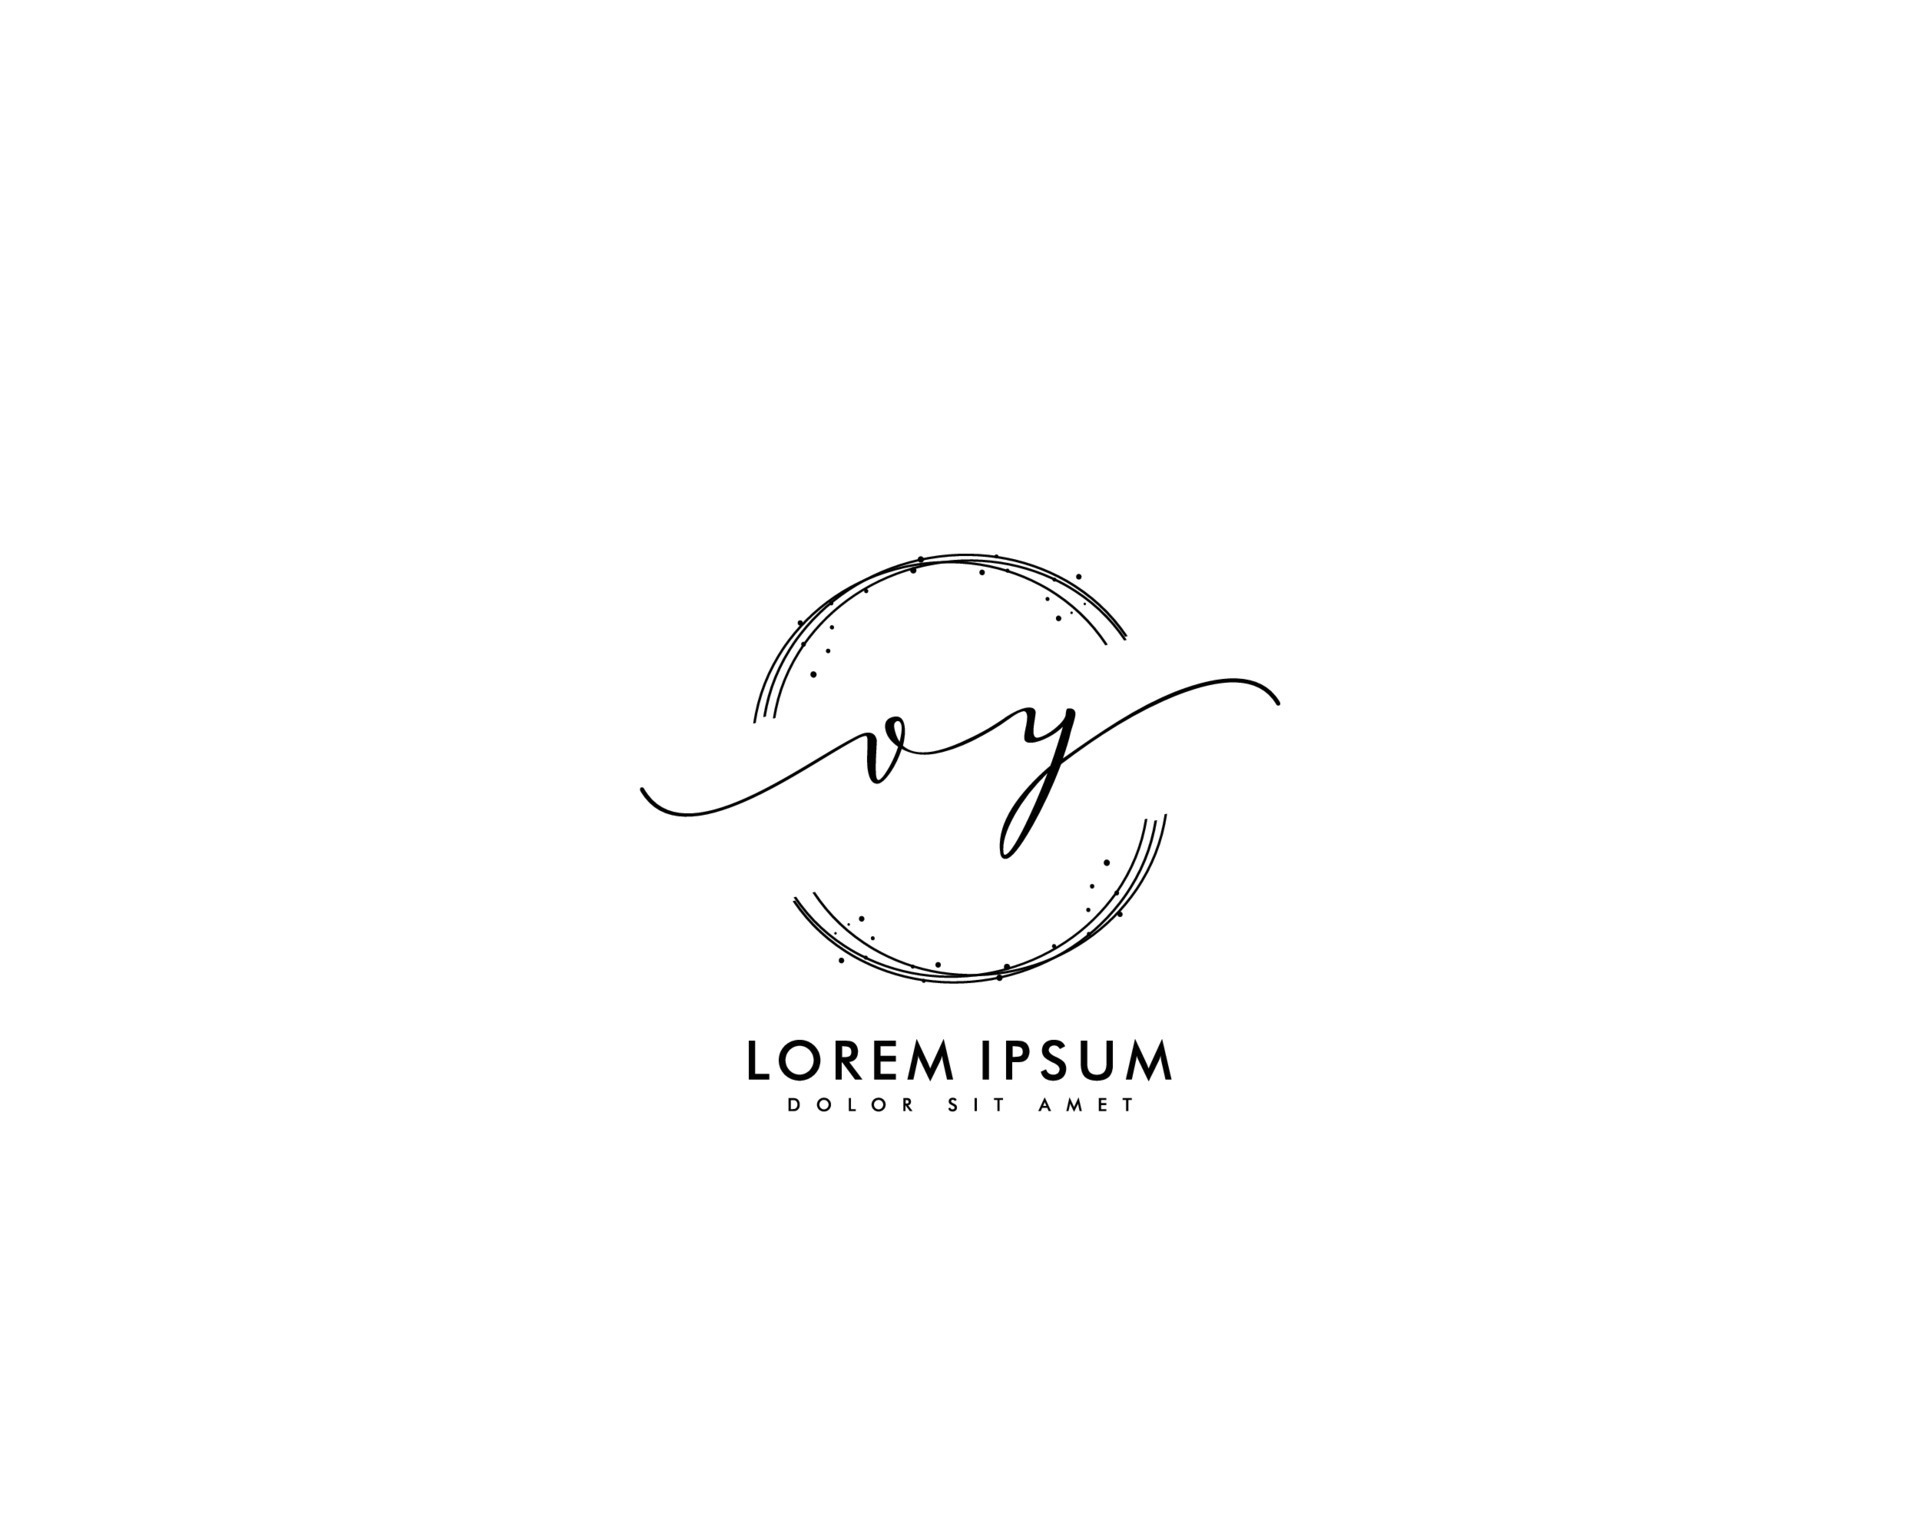 Initial letter YL Feminine logo beauty monogram and elegant logo